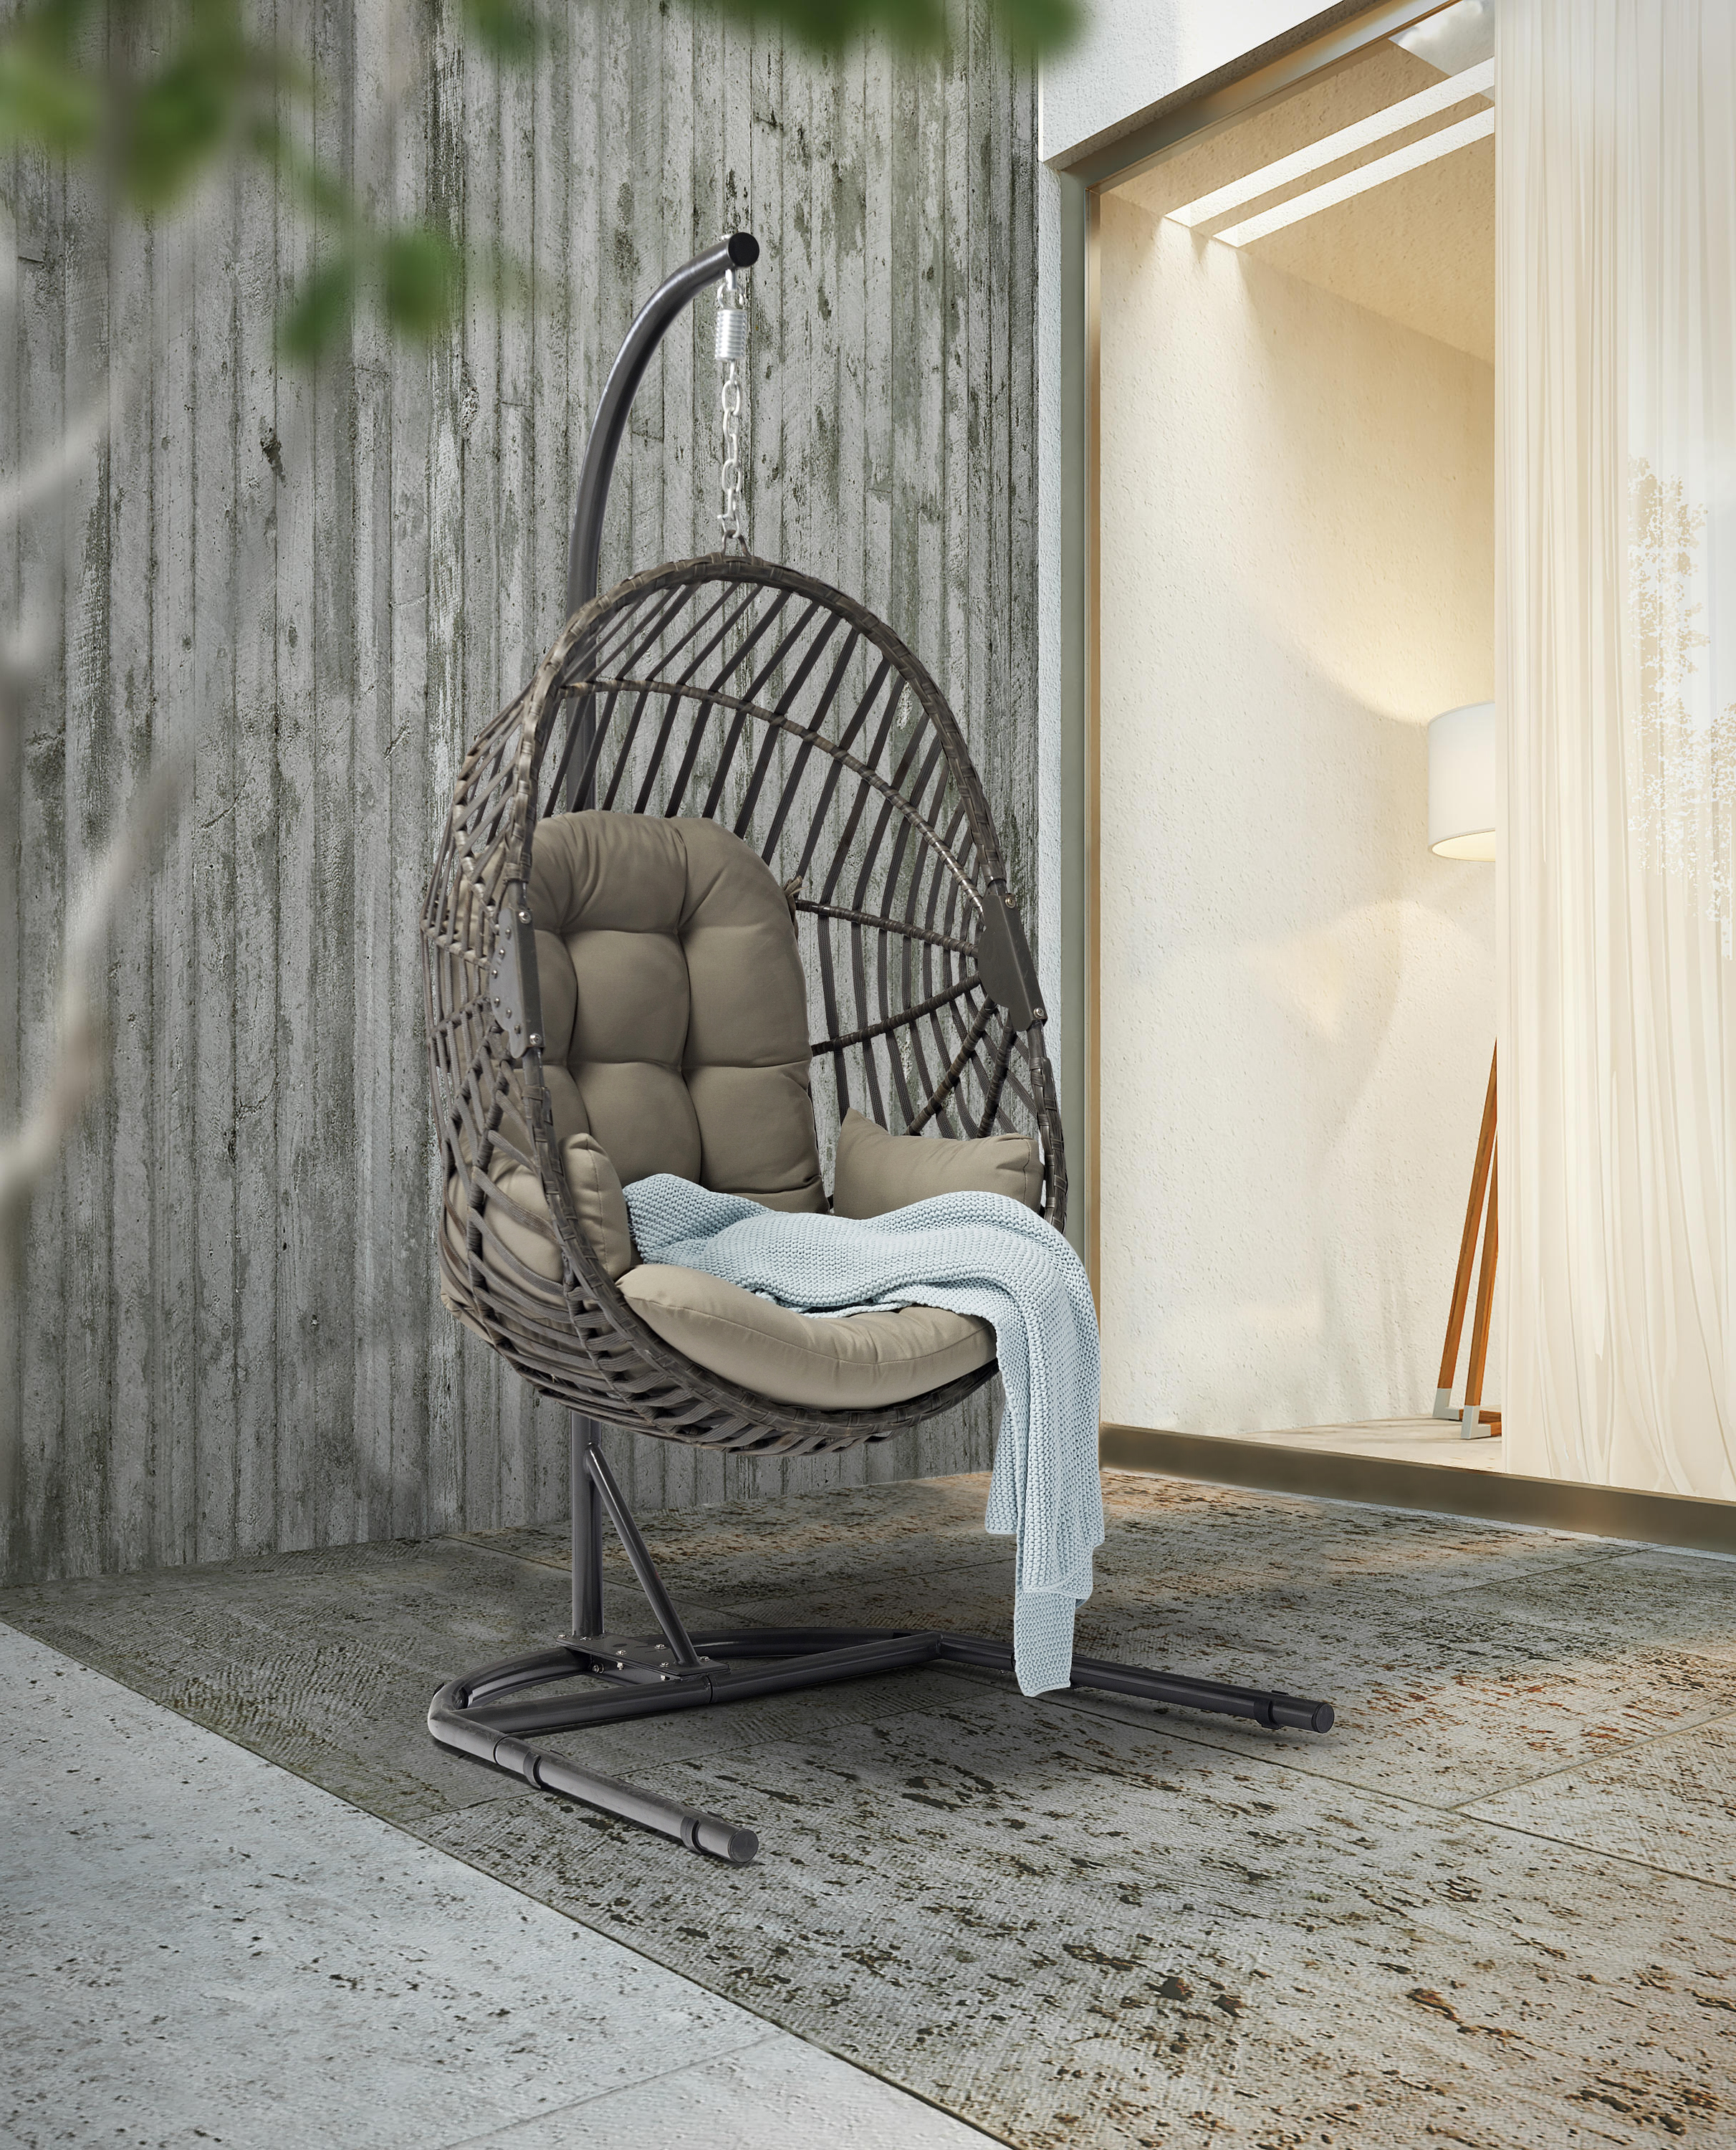 Patio Hammock Outdoor Garden Egg Hanging Swing Chair